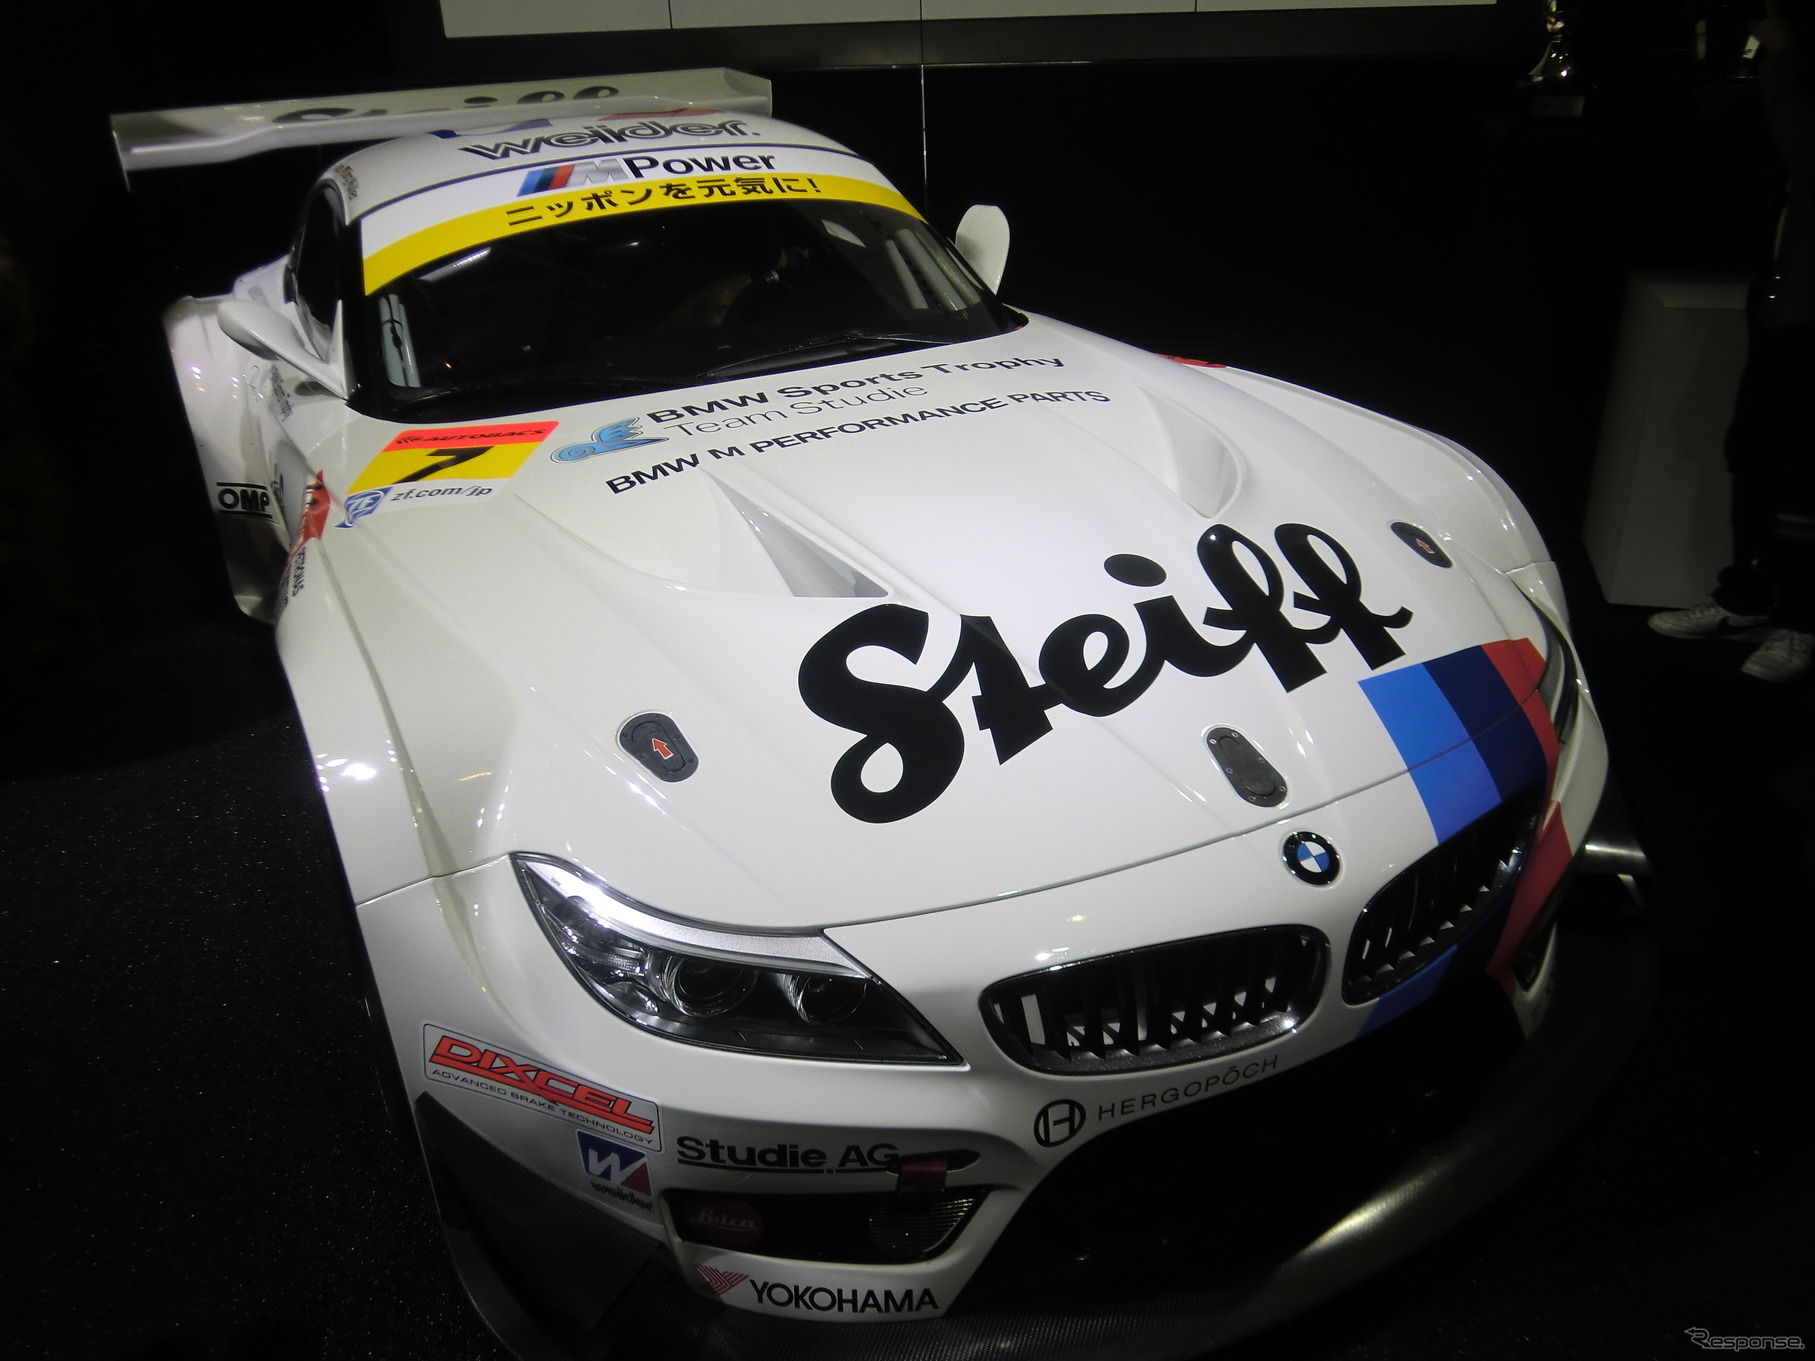 今季からGT300に参戦するBMW Sports Trophy Team Studieのマシンカラーには、BMWワークス感が色濃く漂う。